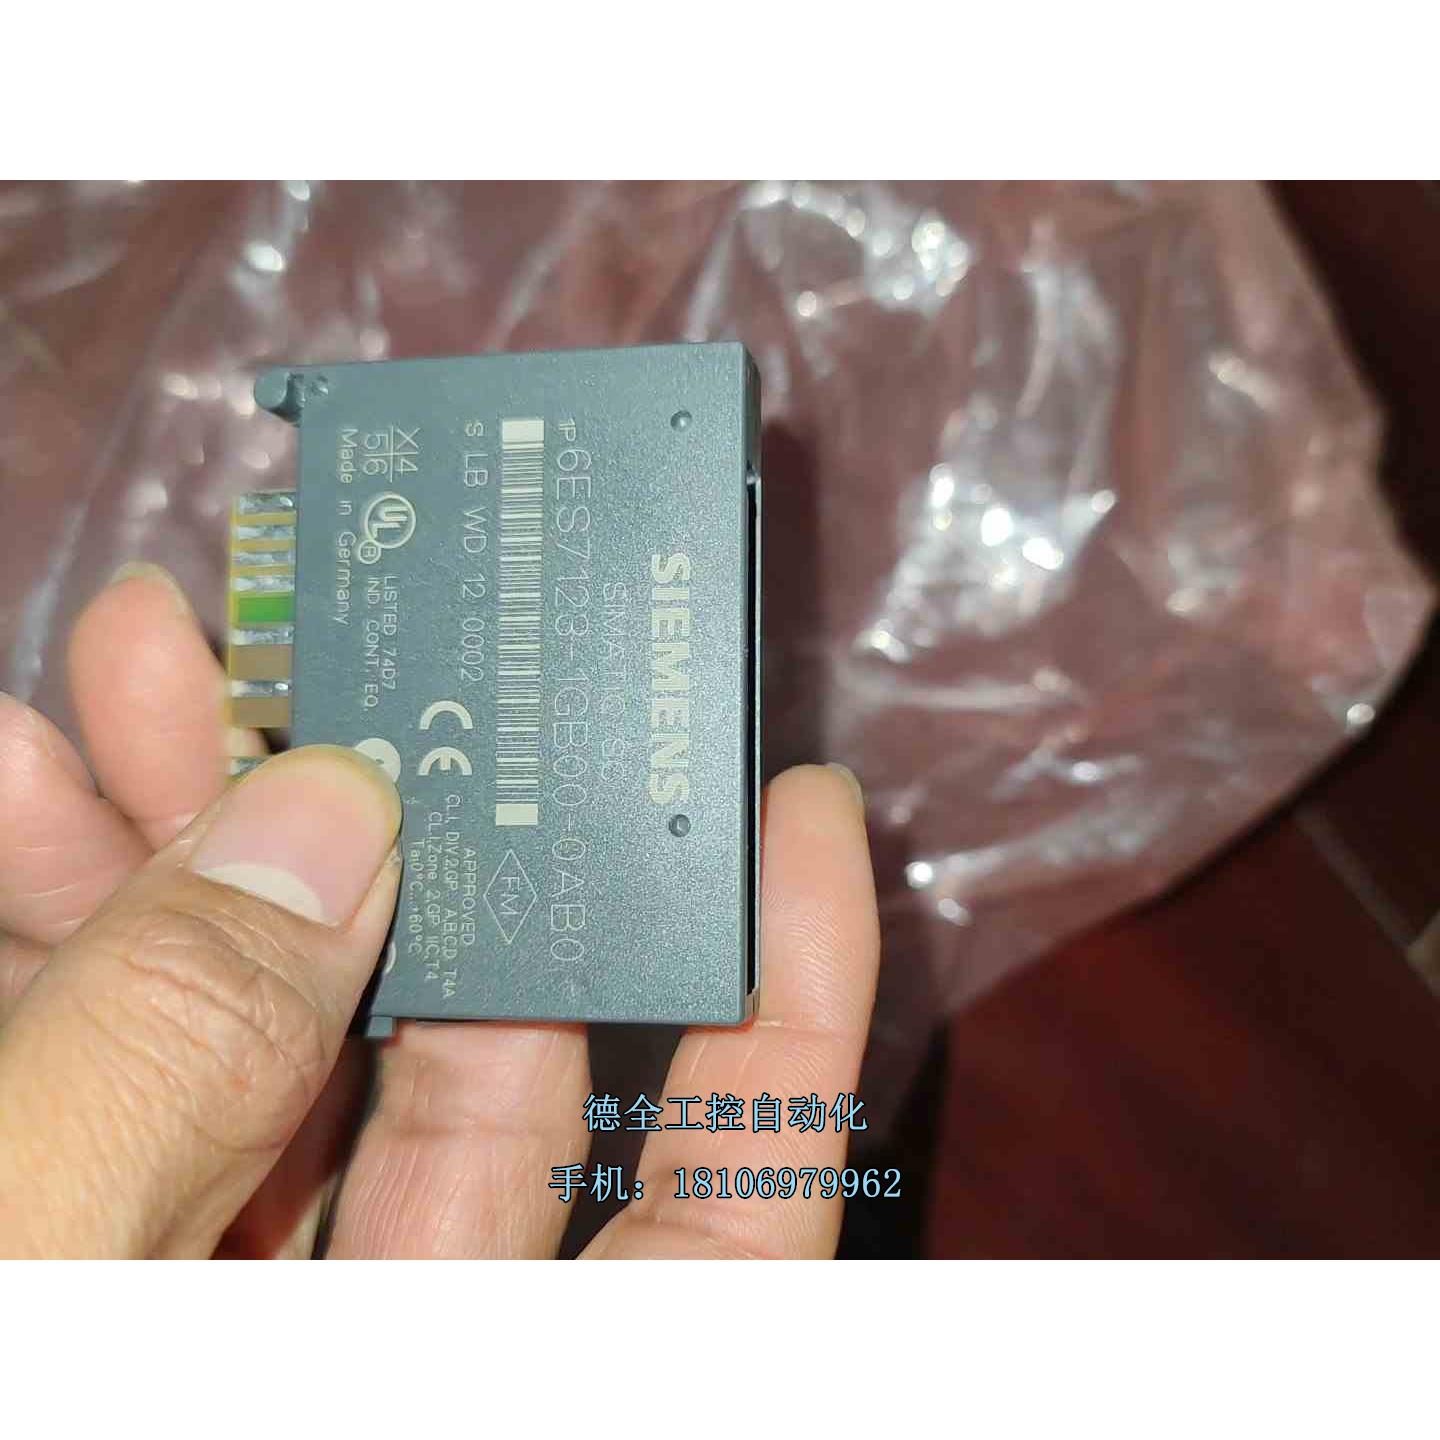 6ES7123-1GB00-0AB0控制模块，商品没议价 电子元器件市场 驱动器/控制器 原图主图